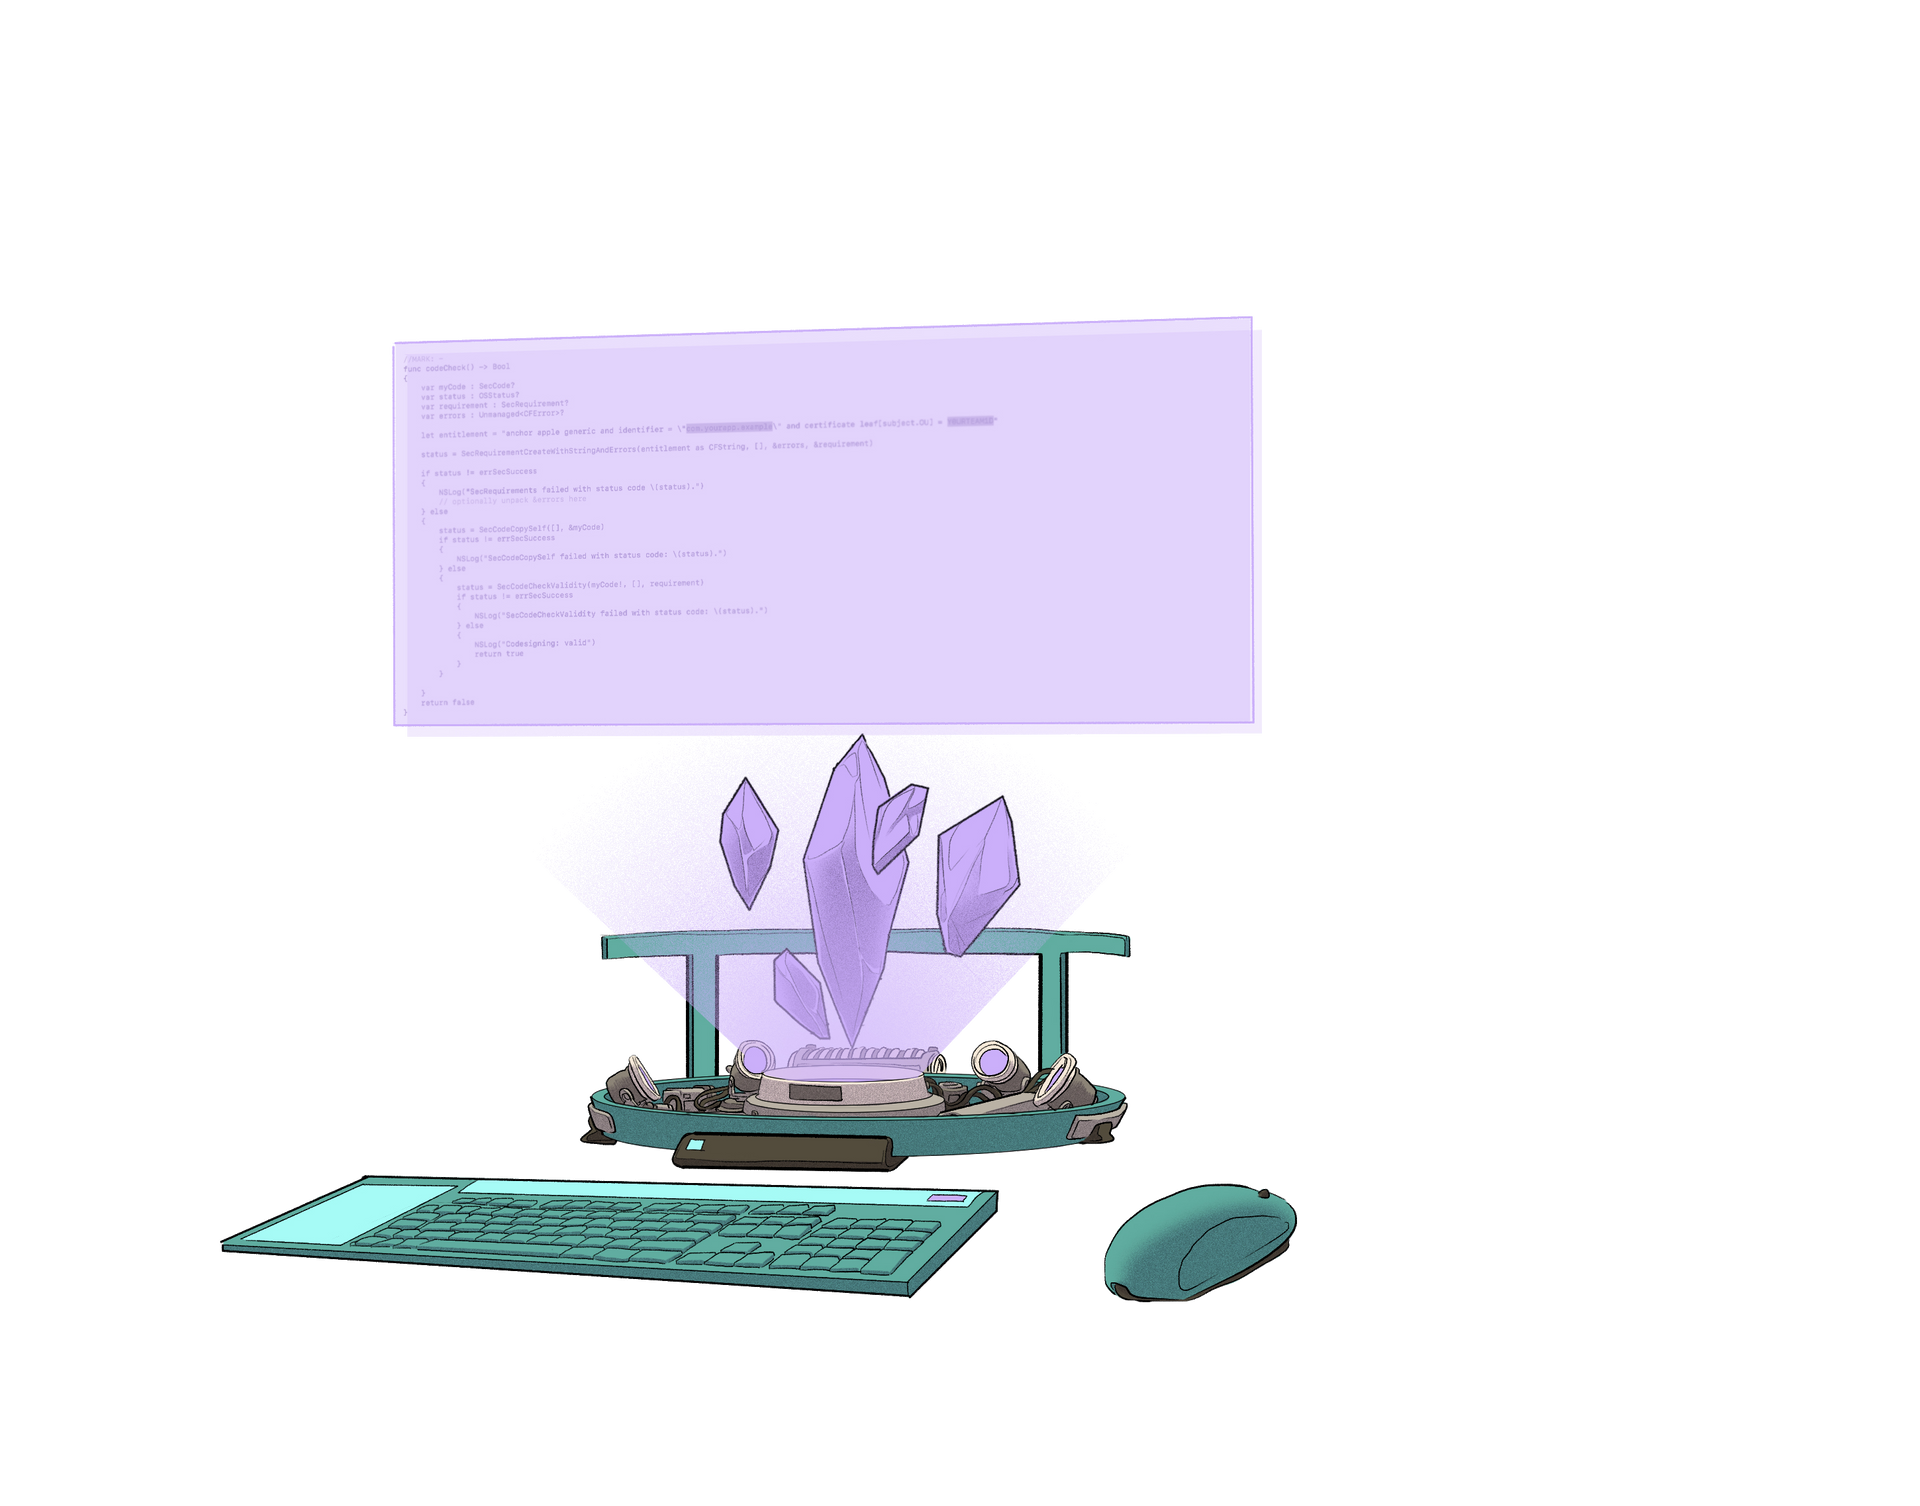 Illustrazione di un computer futuristico alimentato da cristalli Ethereum.